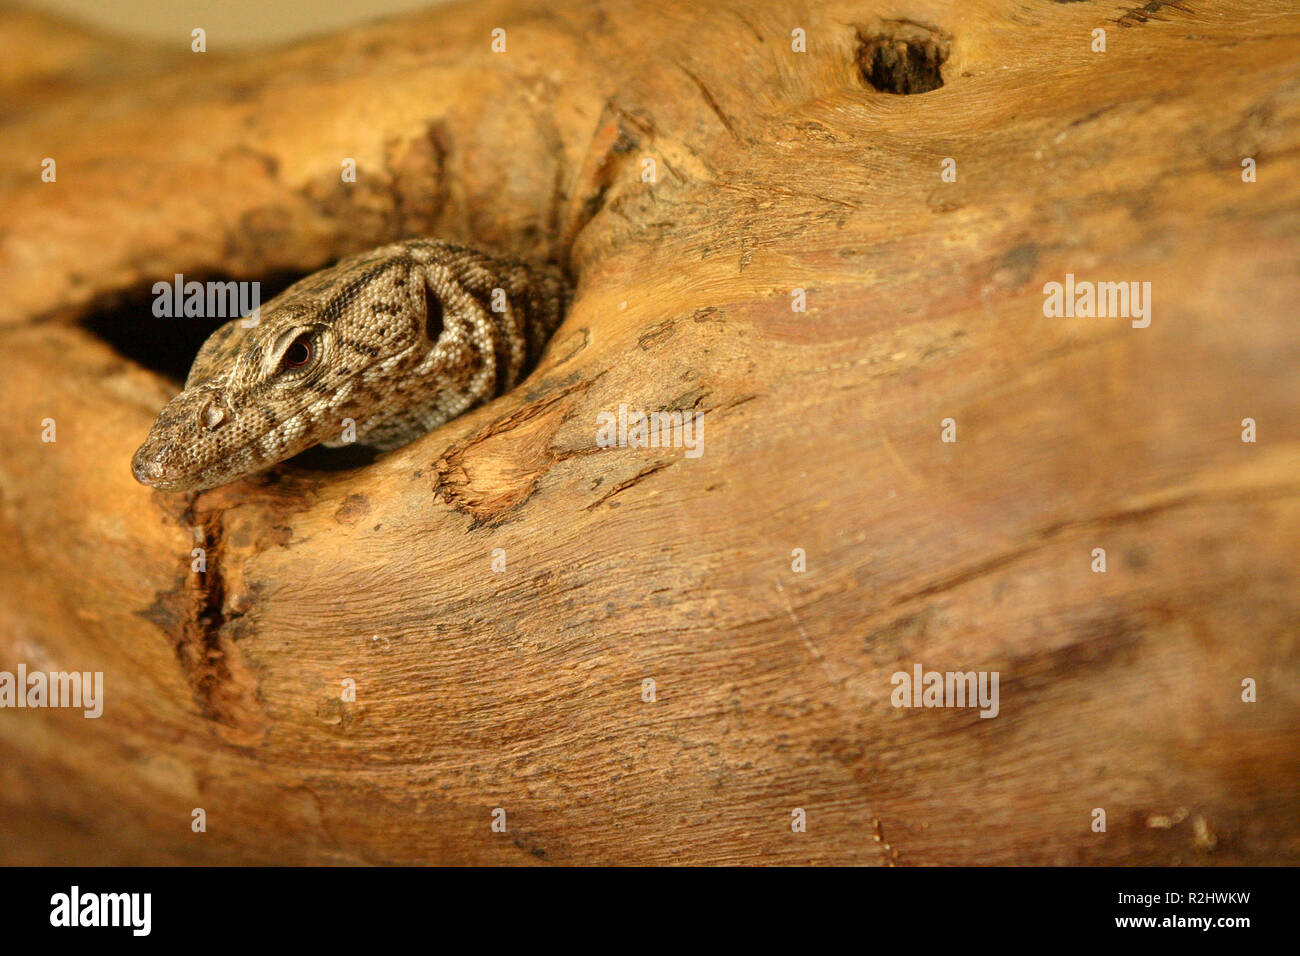 lizard in a reptile house in alice springs,australia Stock Photo